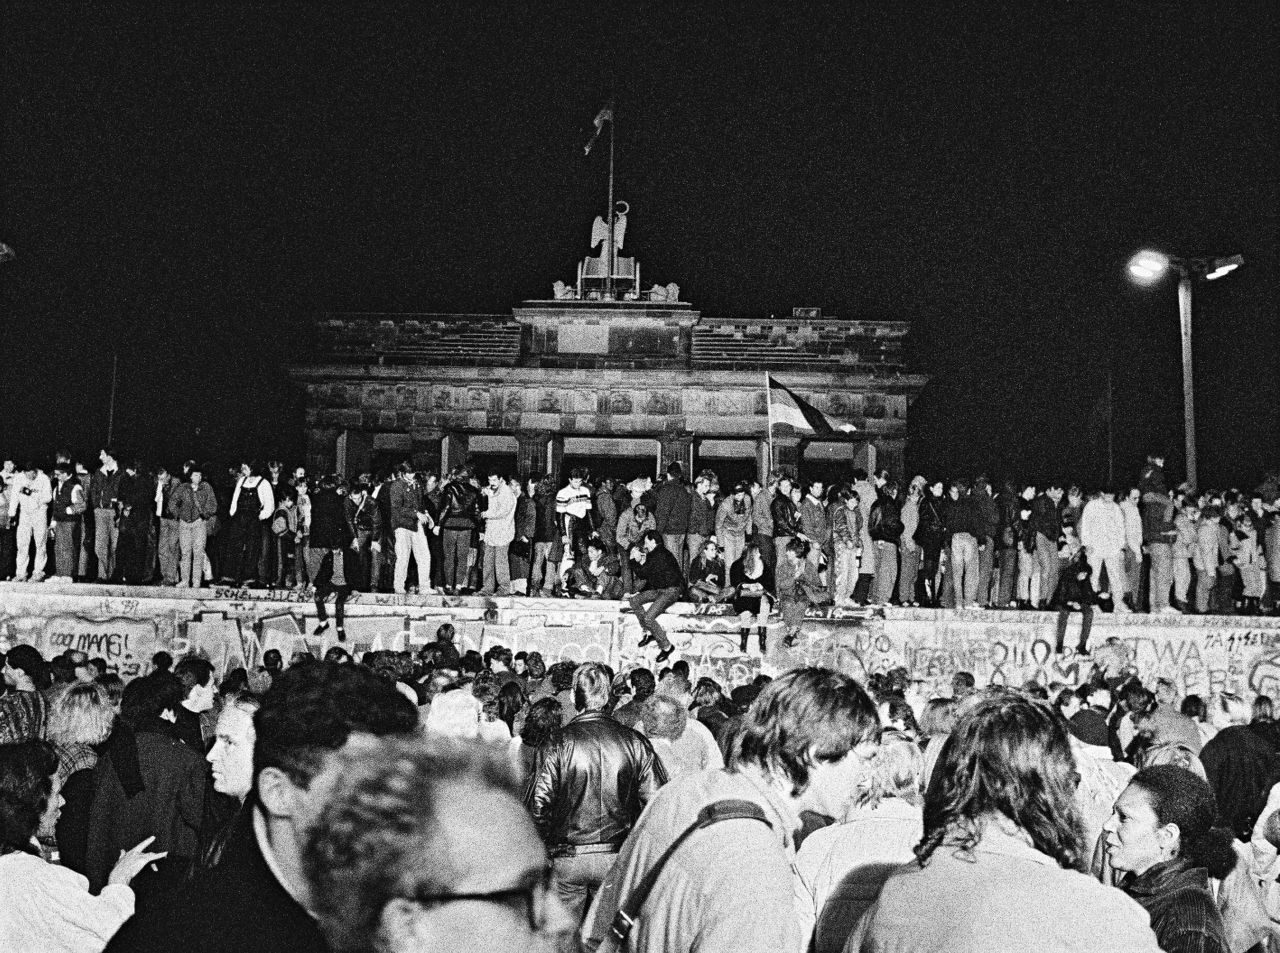 Fotos von feiernden Menschen auf und vor der Berliner Mauer bei Nacht. Zentral im Bild ist das Brandenburger Tor hinter der Mauer zu sehen.